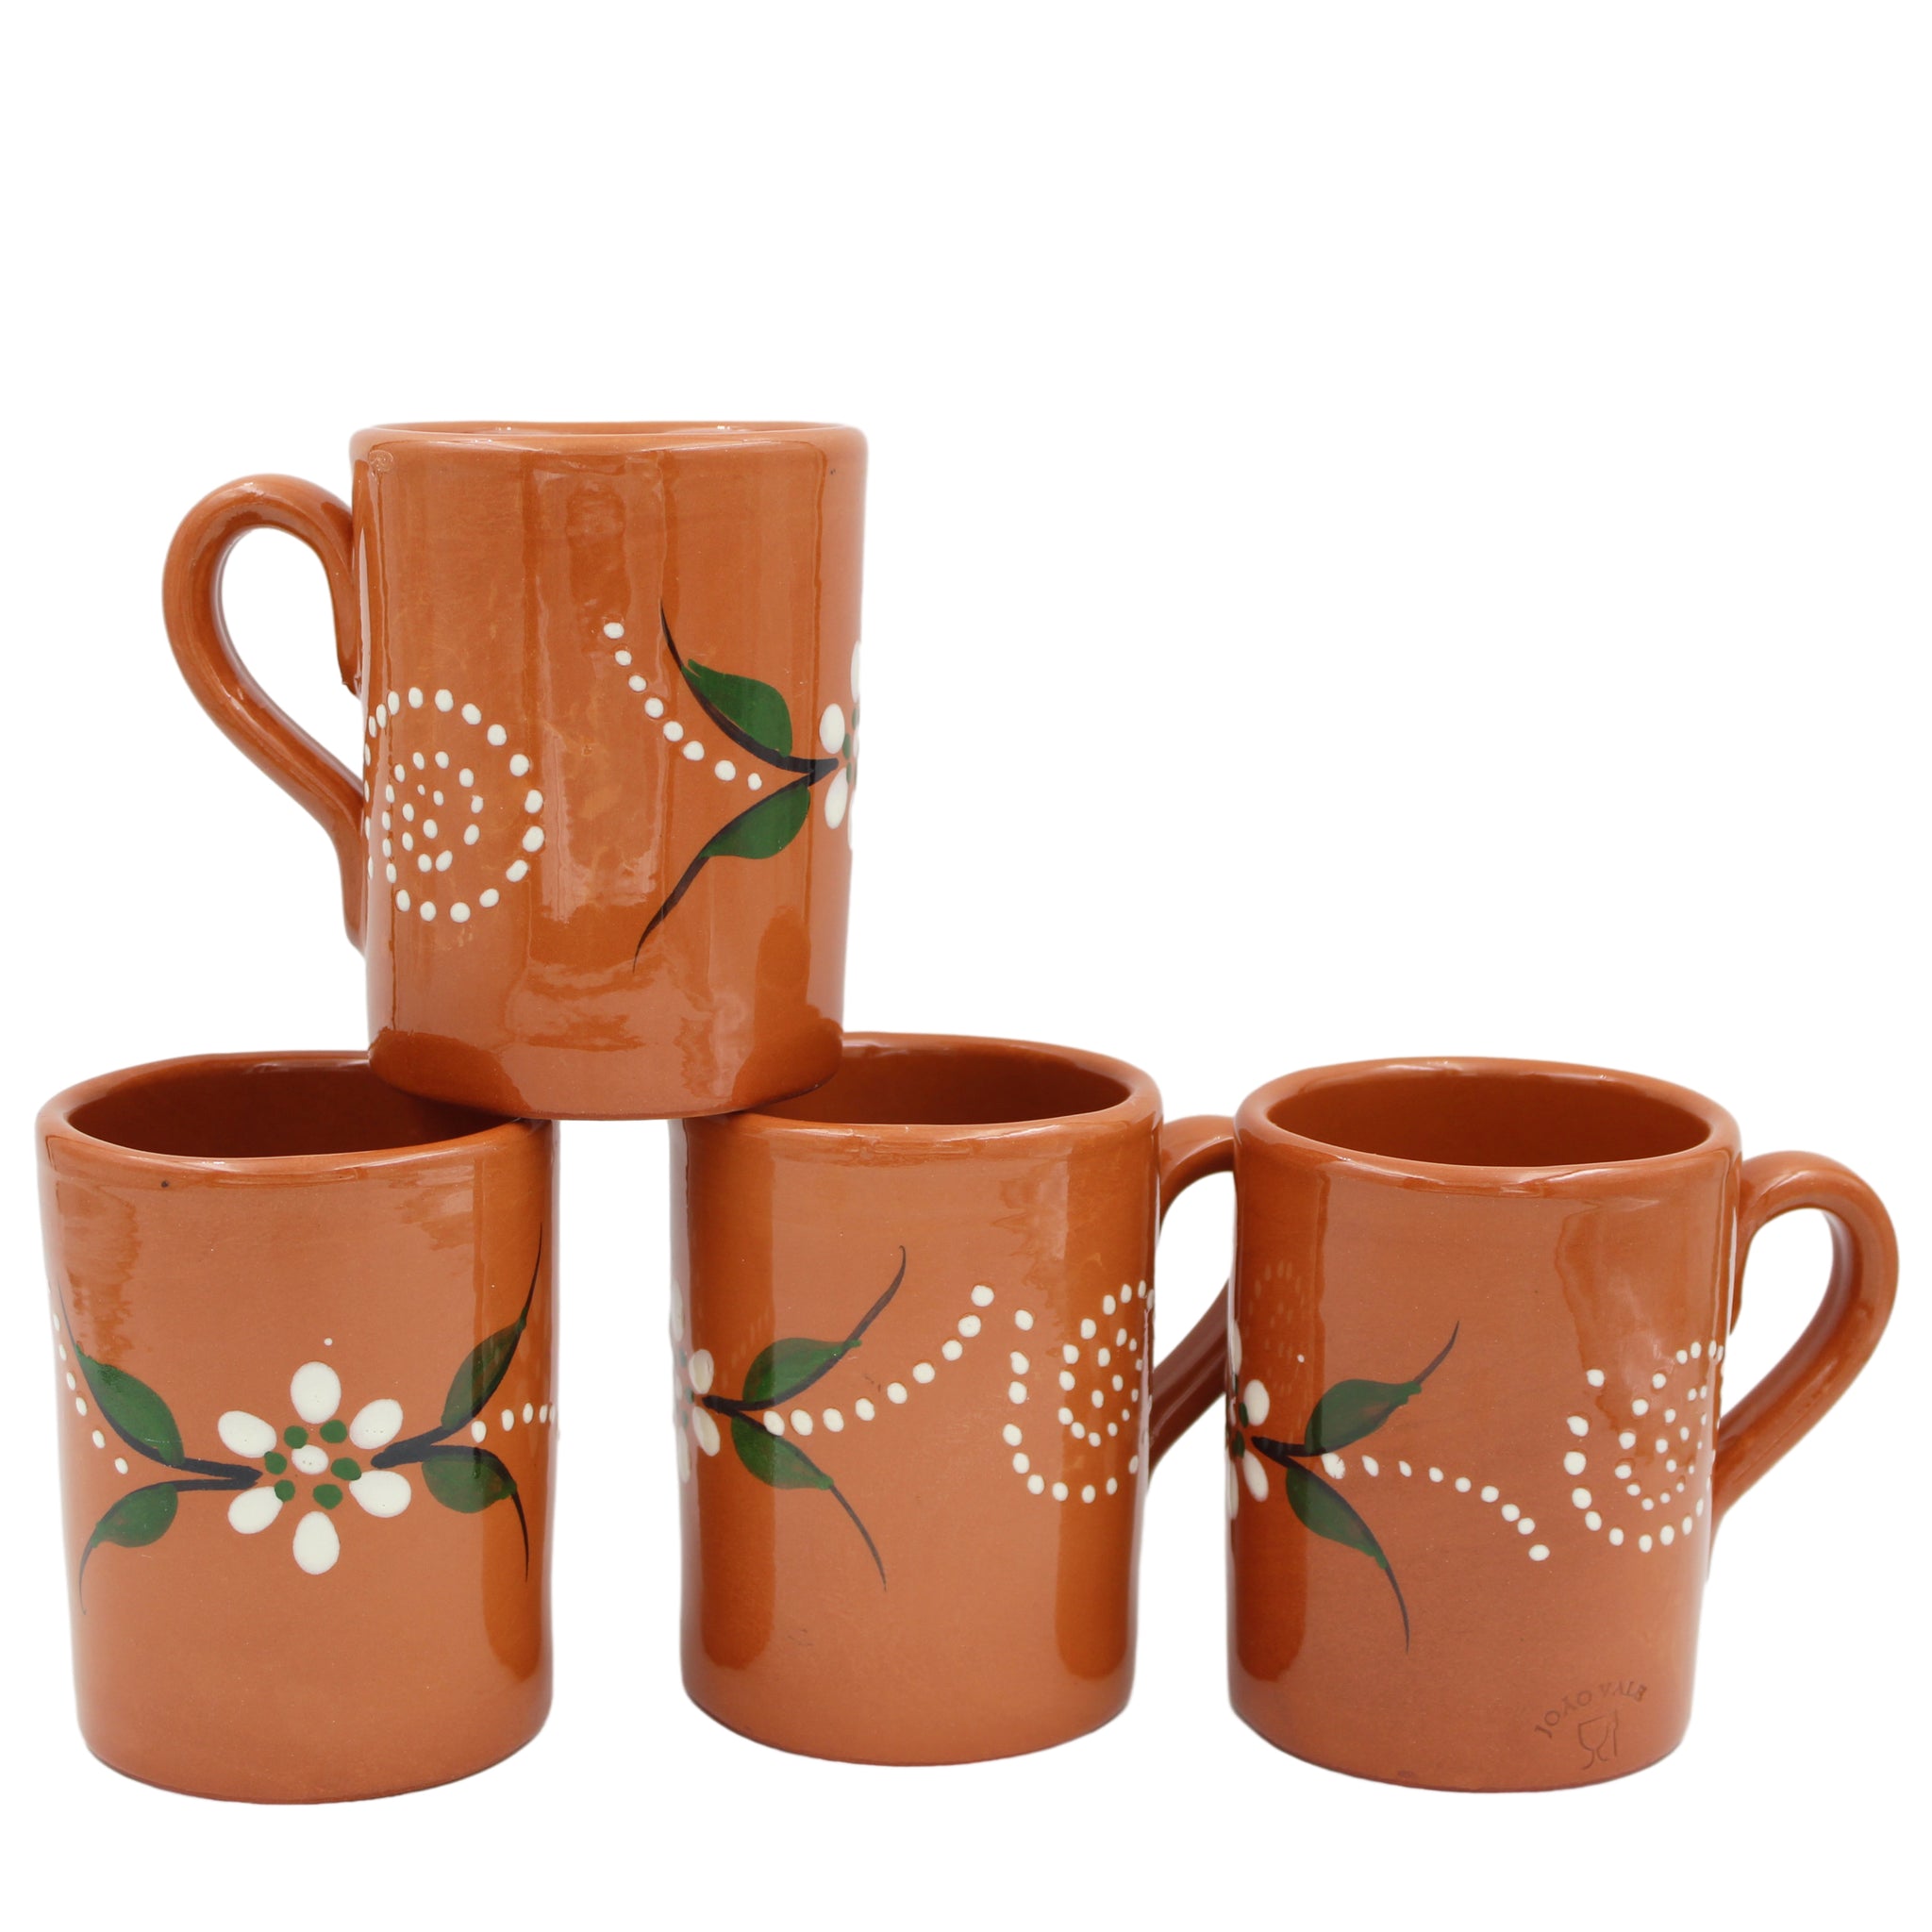 Football Club MUG Tea Tub Ceramic Tea Coffee Cup Mugs